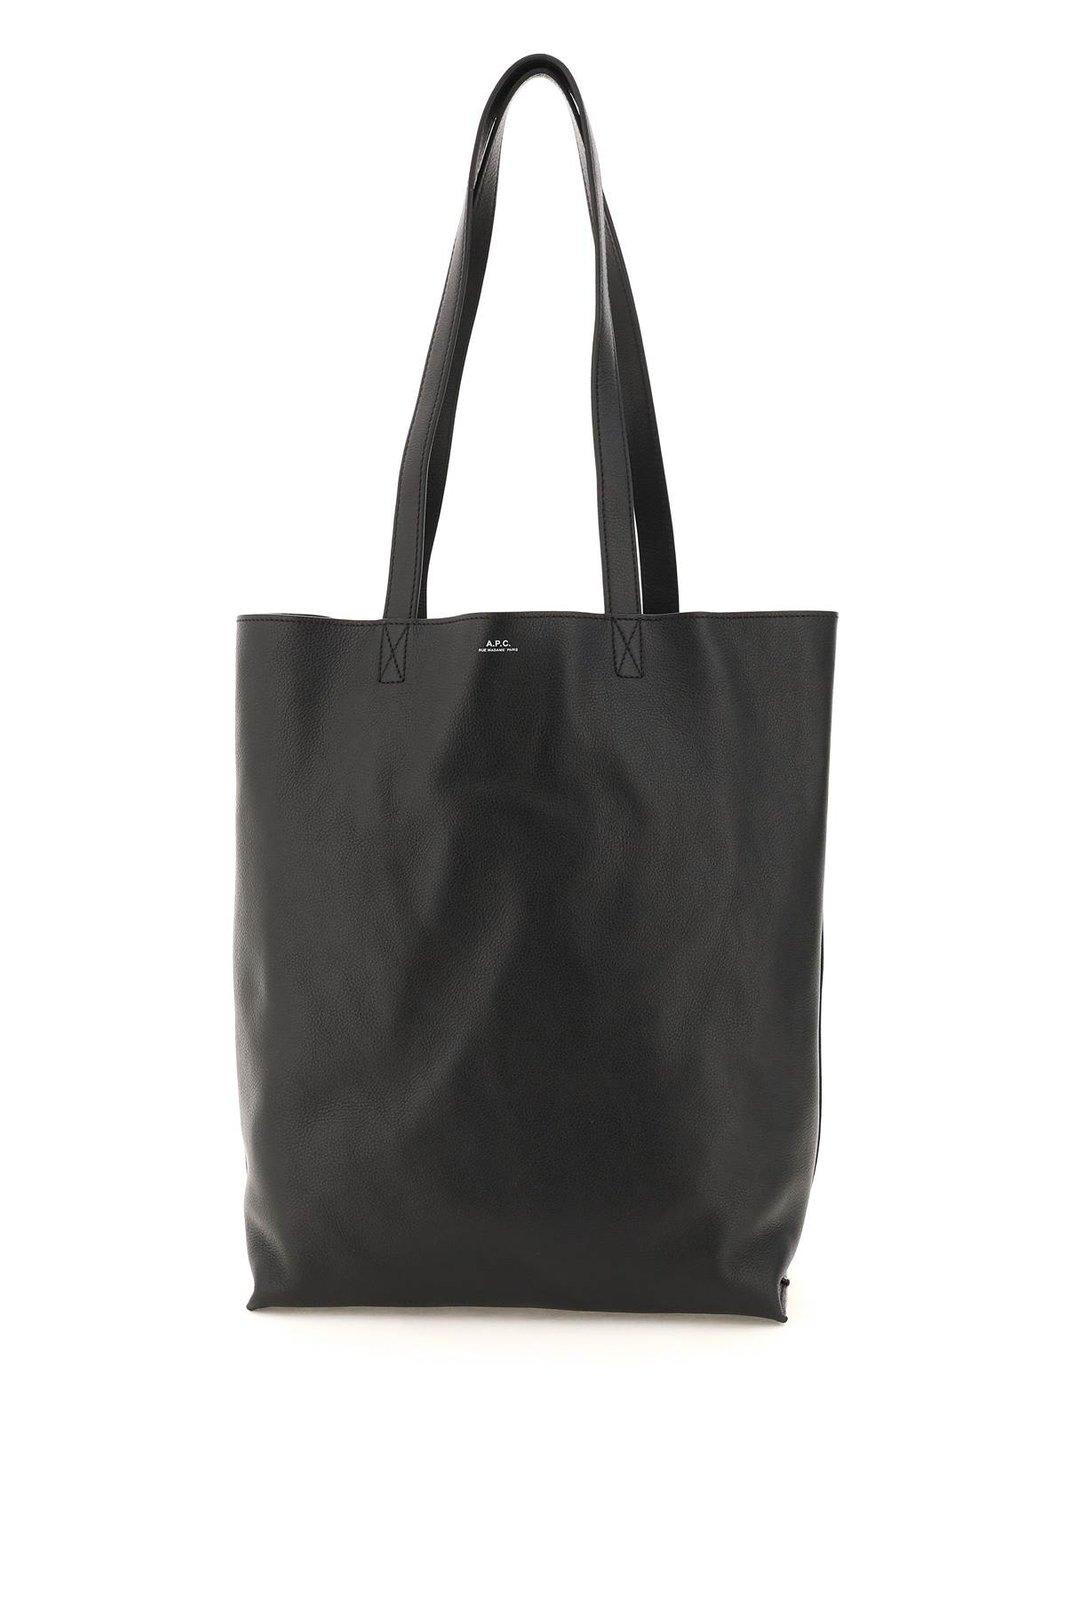 Apc Logo Print Tote Bag In Black